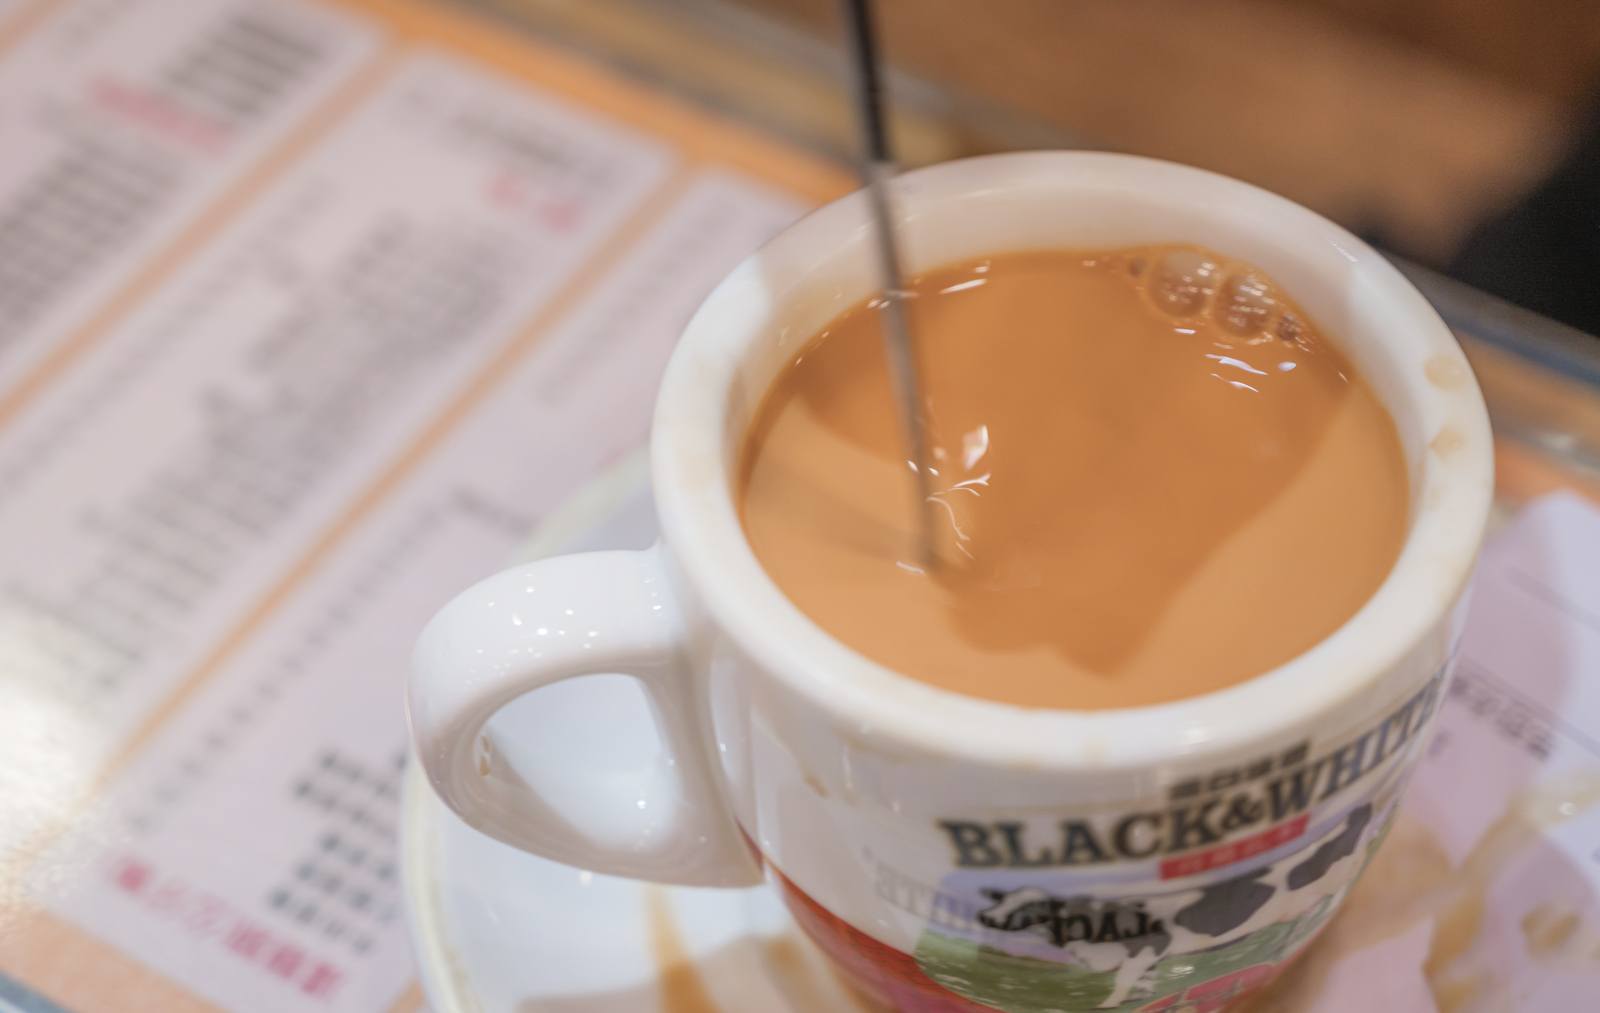 Things-to-do-in-Hong-Kong-cha-chaan-teng-milk-tea